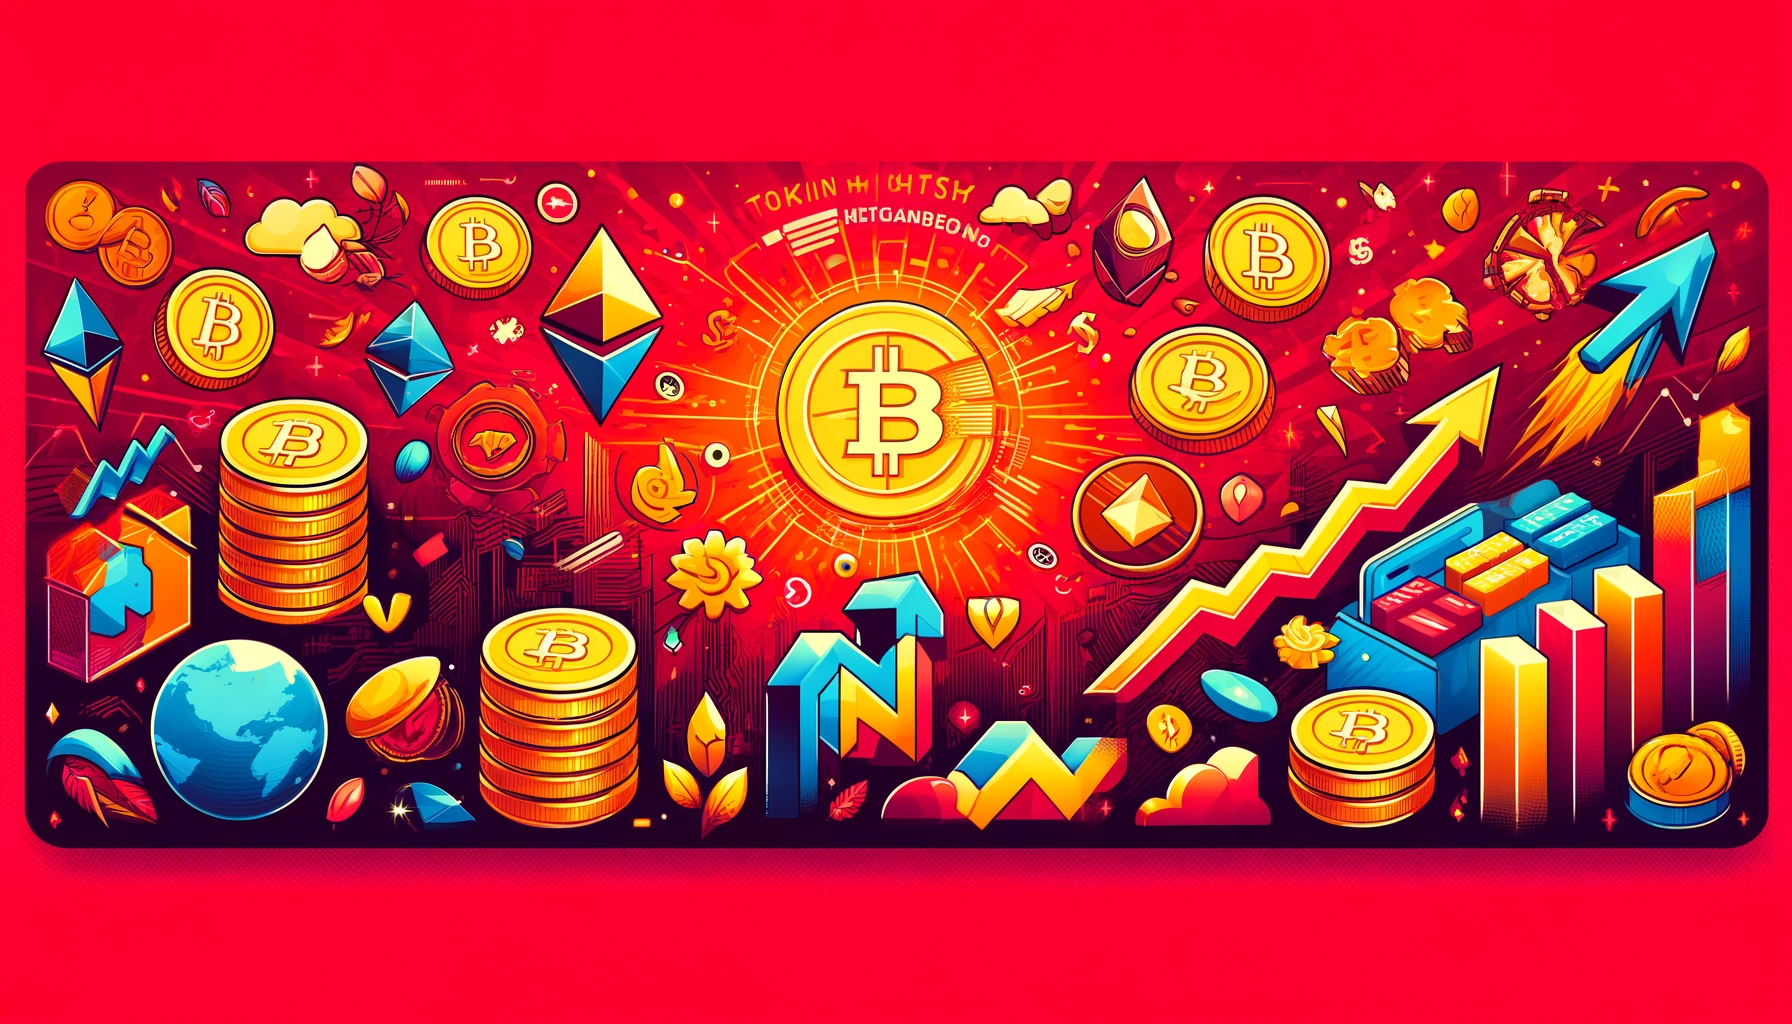 トークンエコノミーを表すアイキャッチ画像。赤い背景にビットコインやイーサリアムのトークン、ブロックチェーンのシンボル、上昇するグラフや矢印が描かれている。